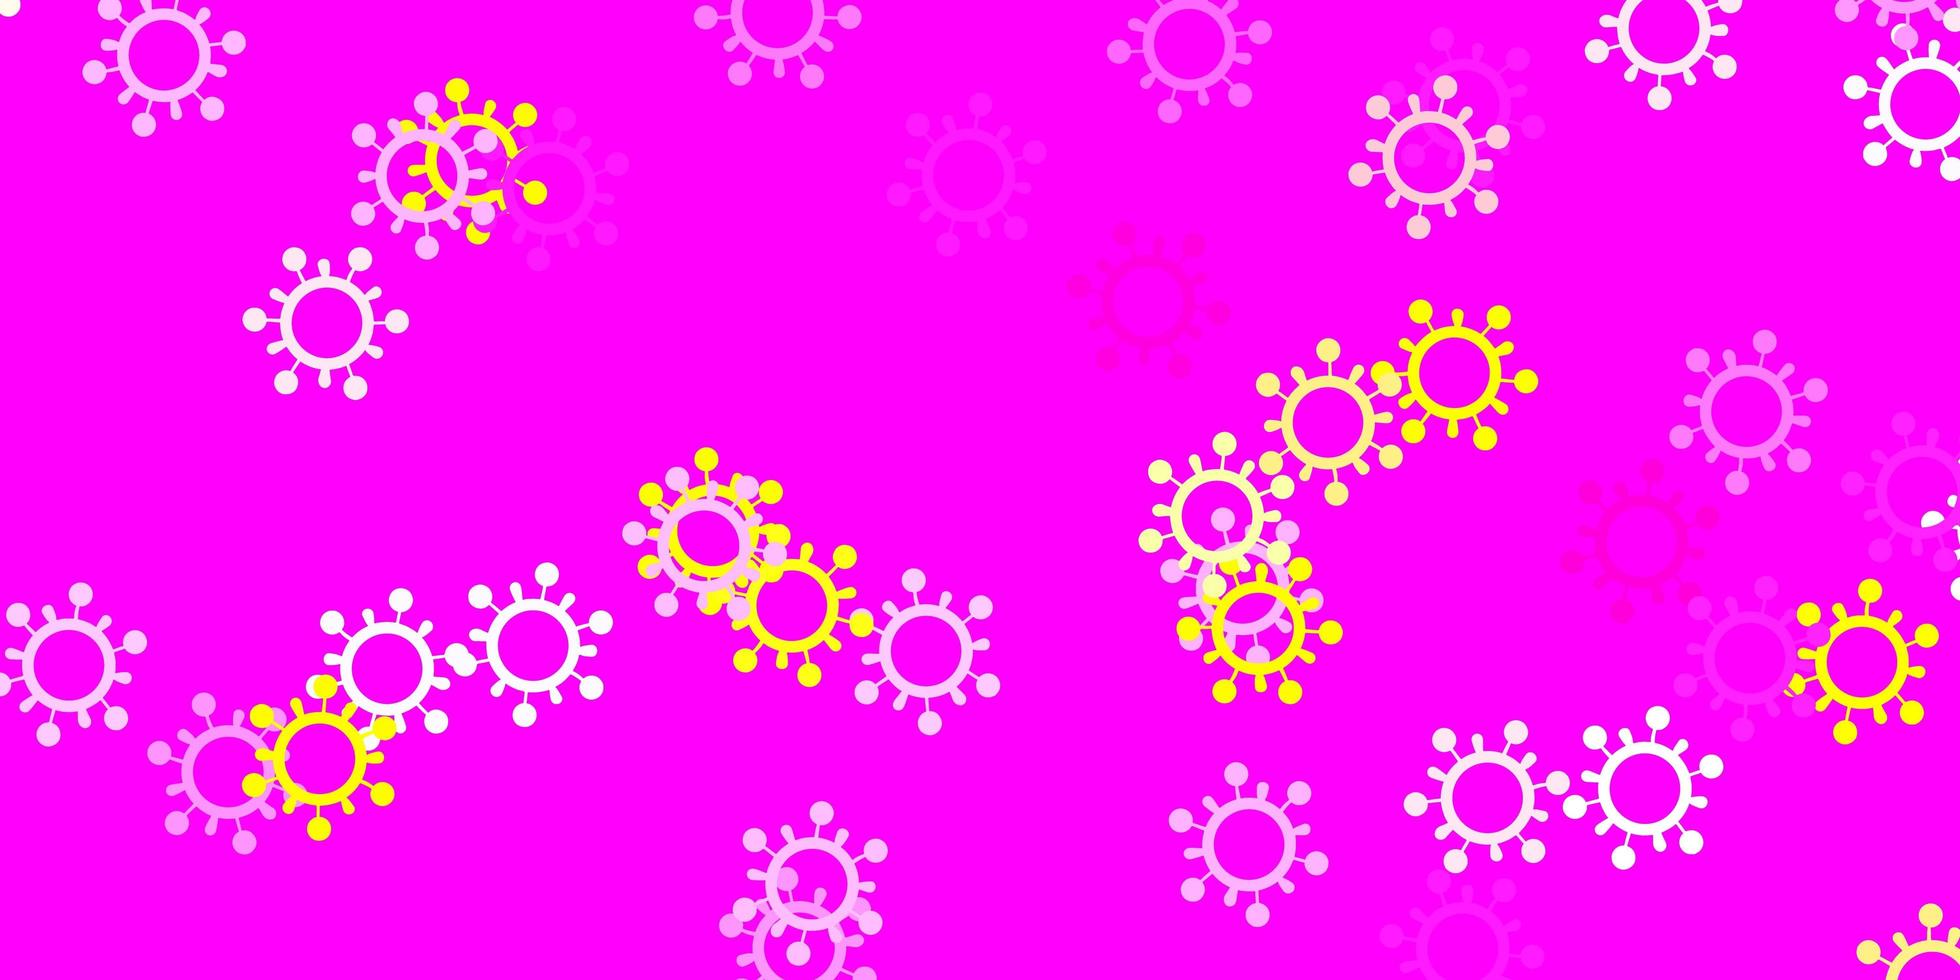 ljusrosa, gul vektorbakgrund med covid-19 symboler. vektor